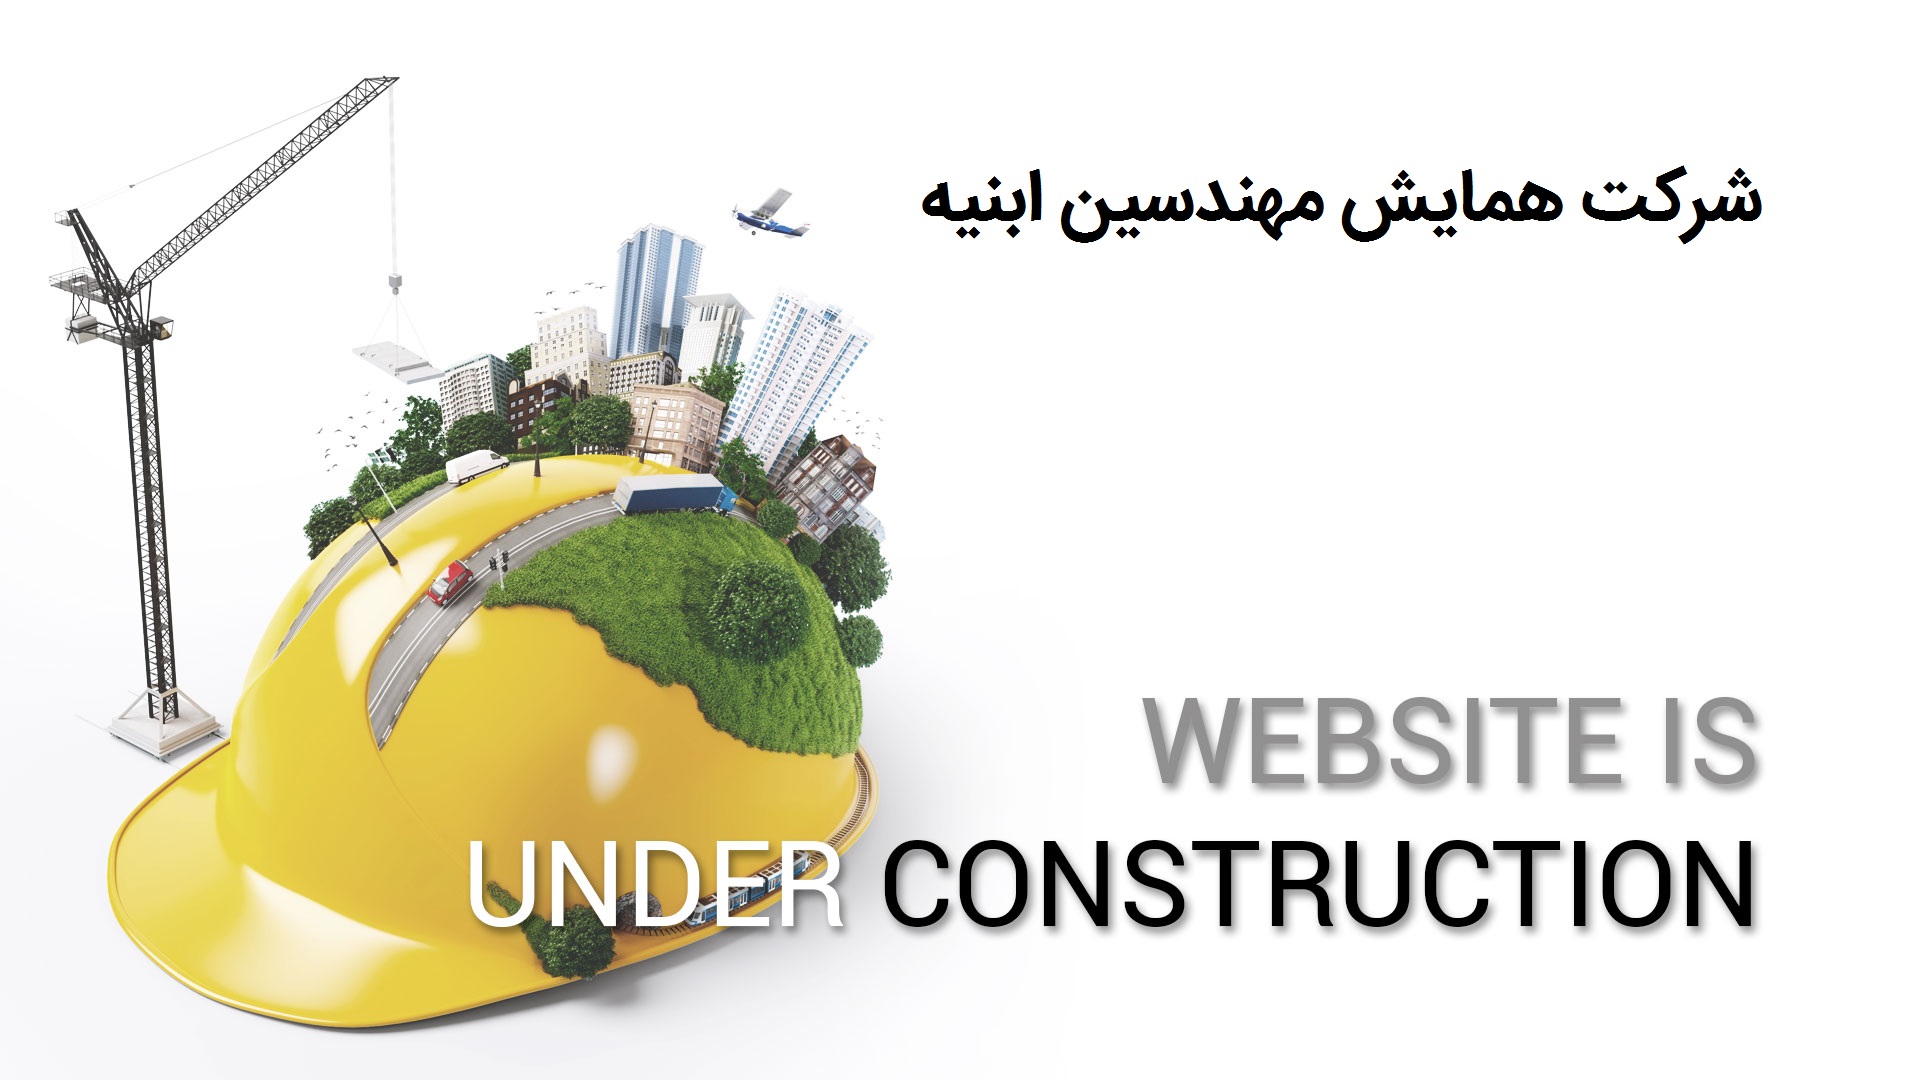 Under Construcion